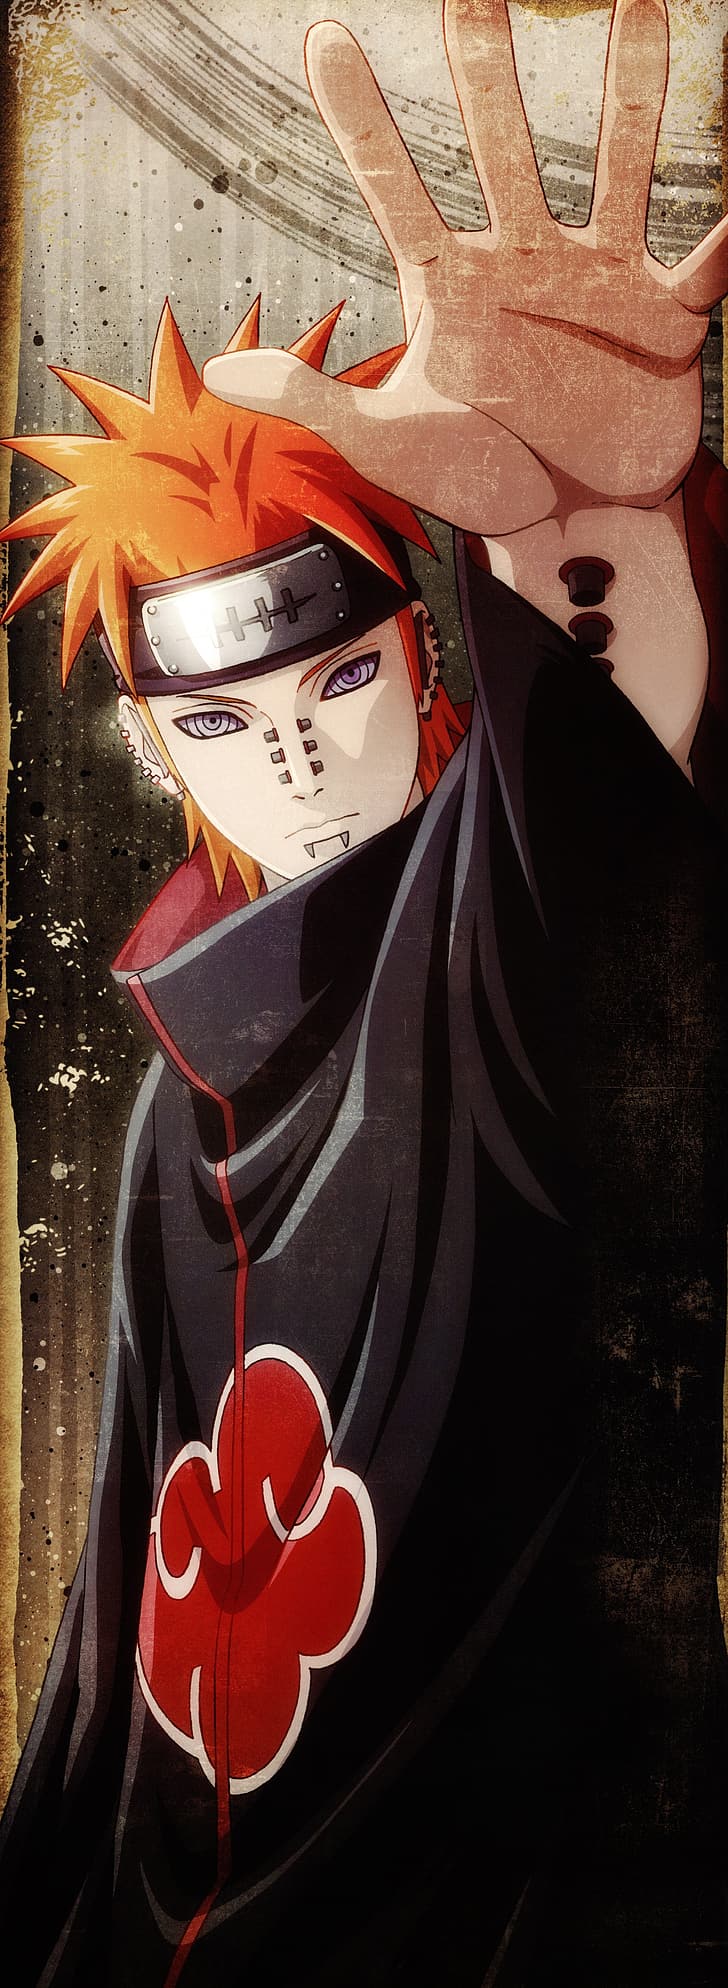 Hd Wallpaper Naruto Anime Naruto Akatsuki Naruto Shippuuden Uzumaki Naruto Wallpaper Flare